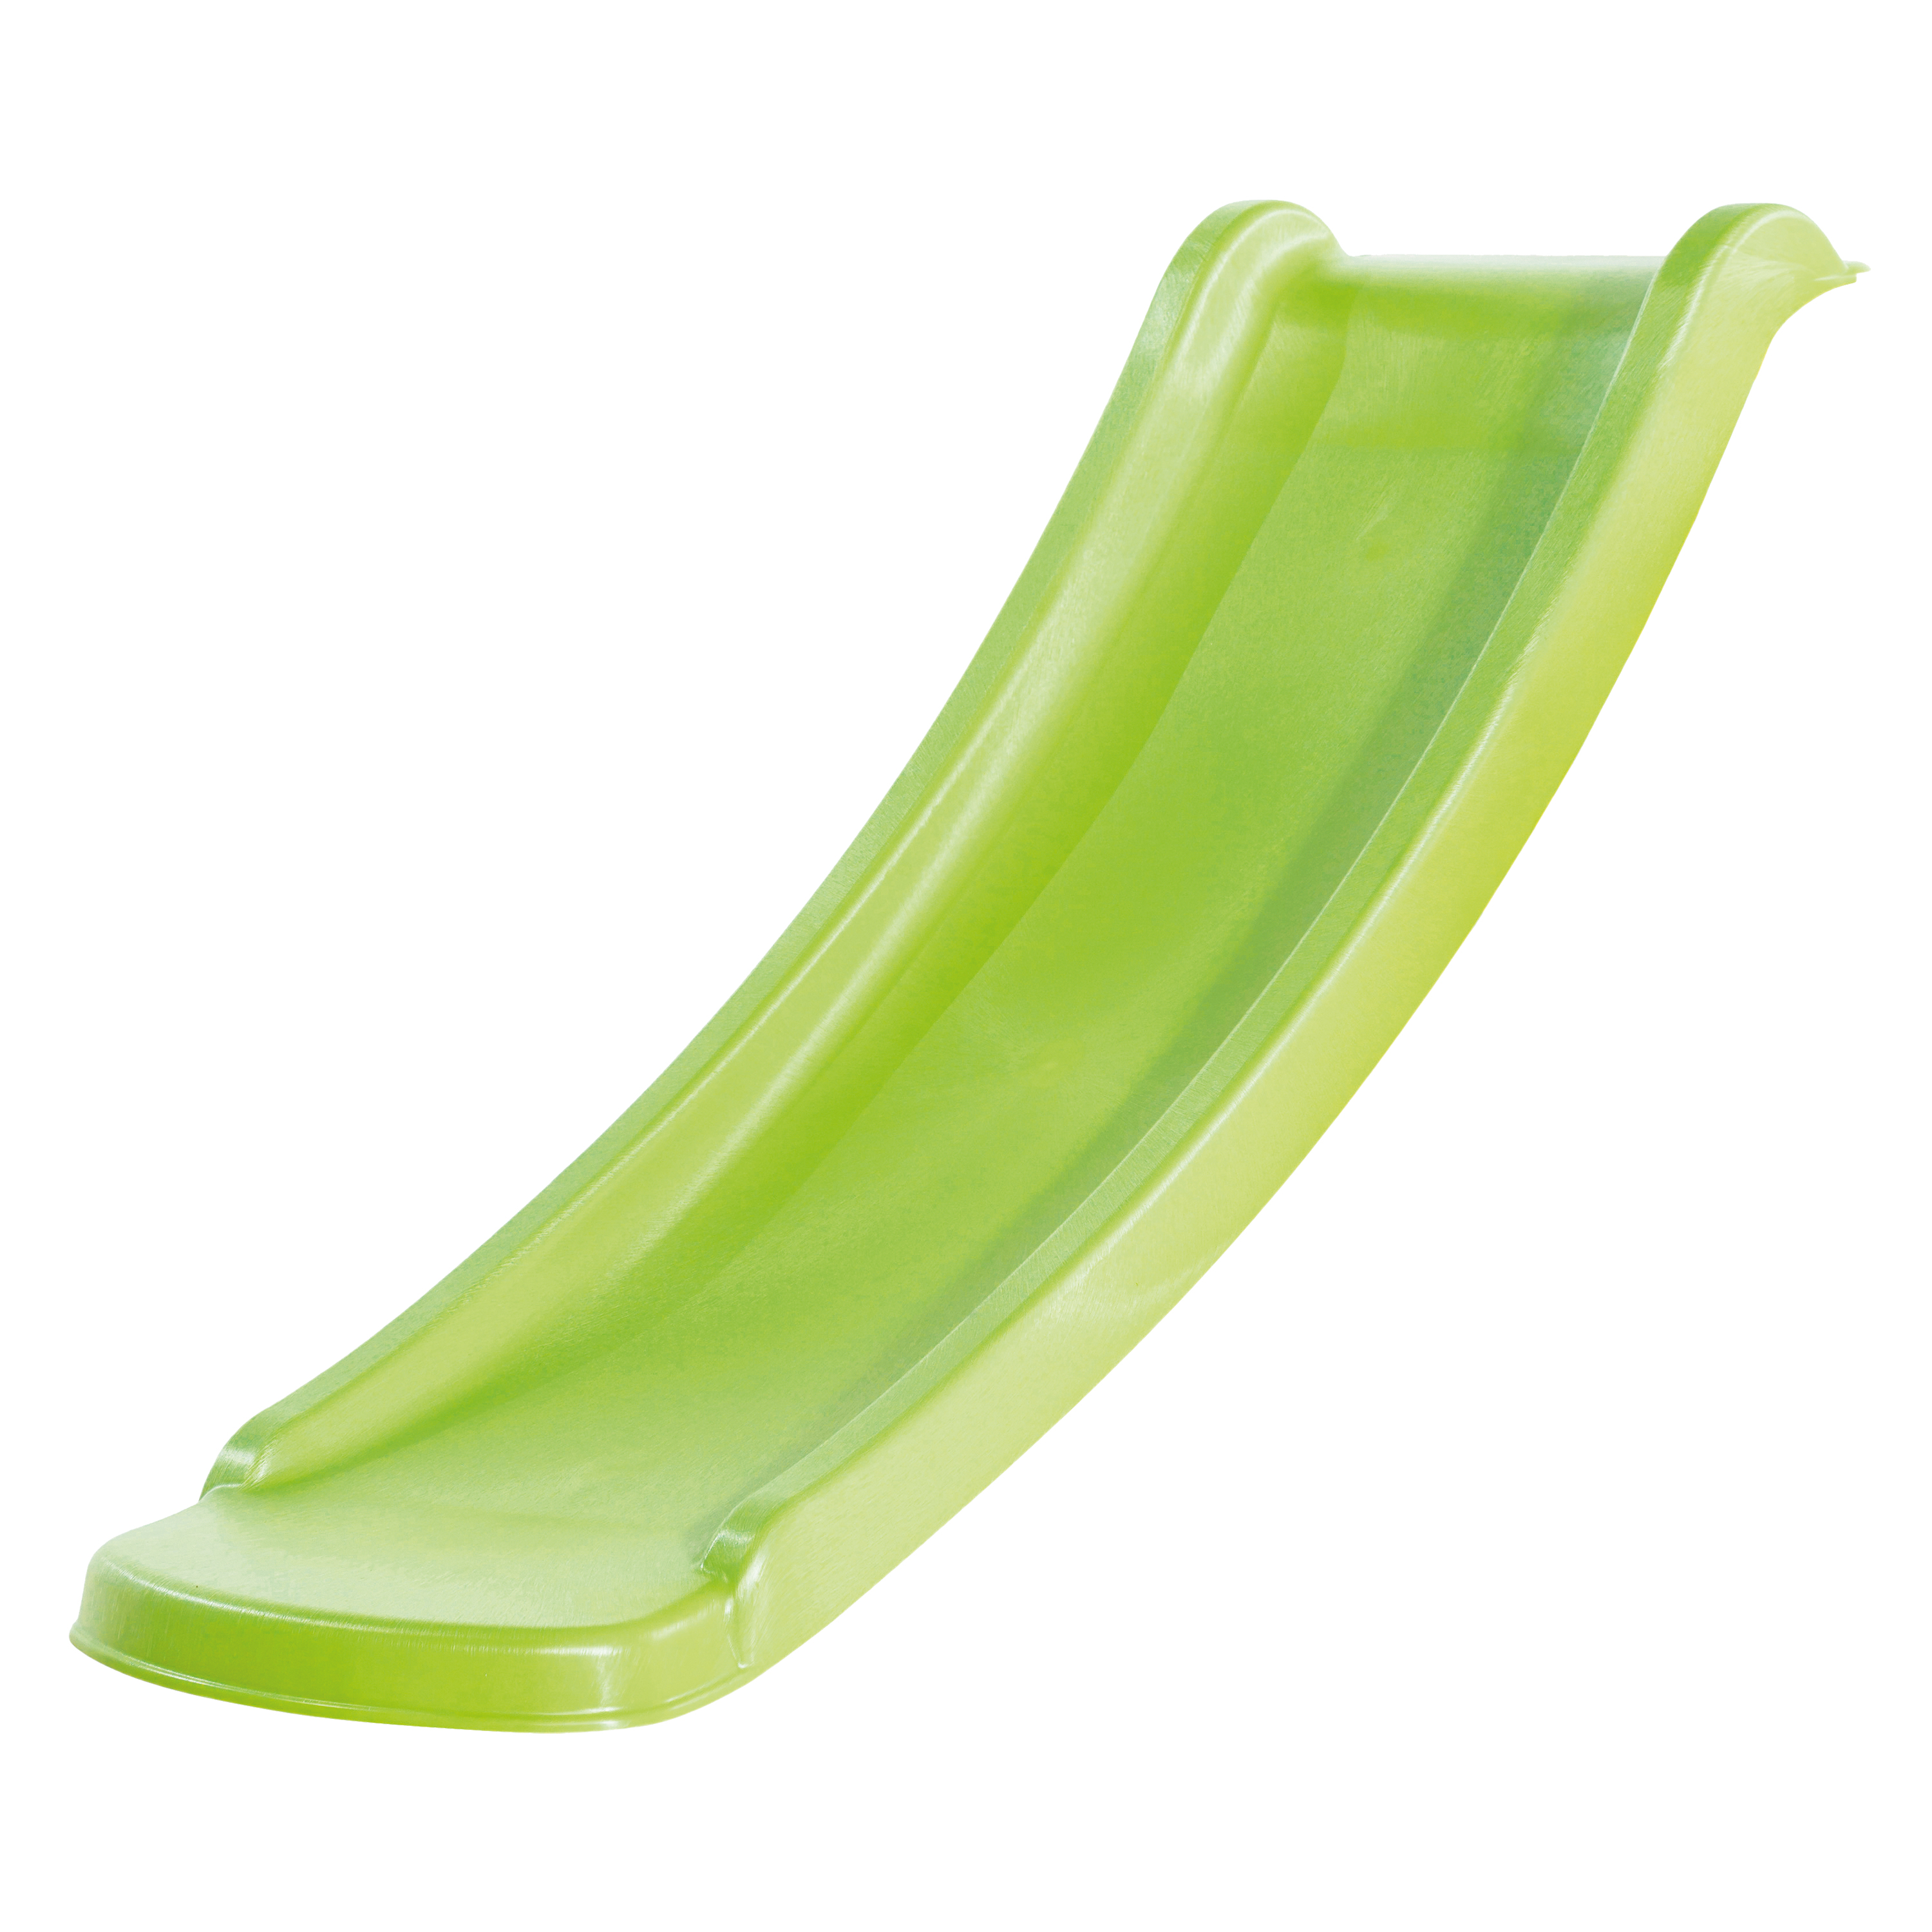 Sky120 Slide Lime Green - 118 cm